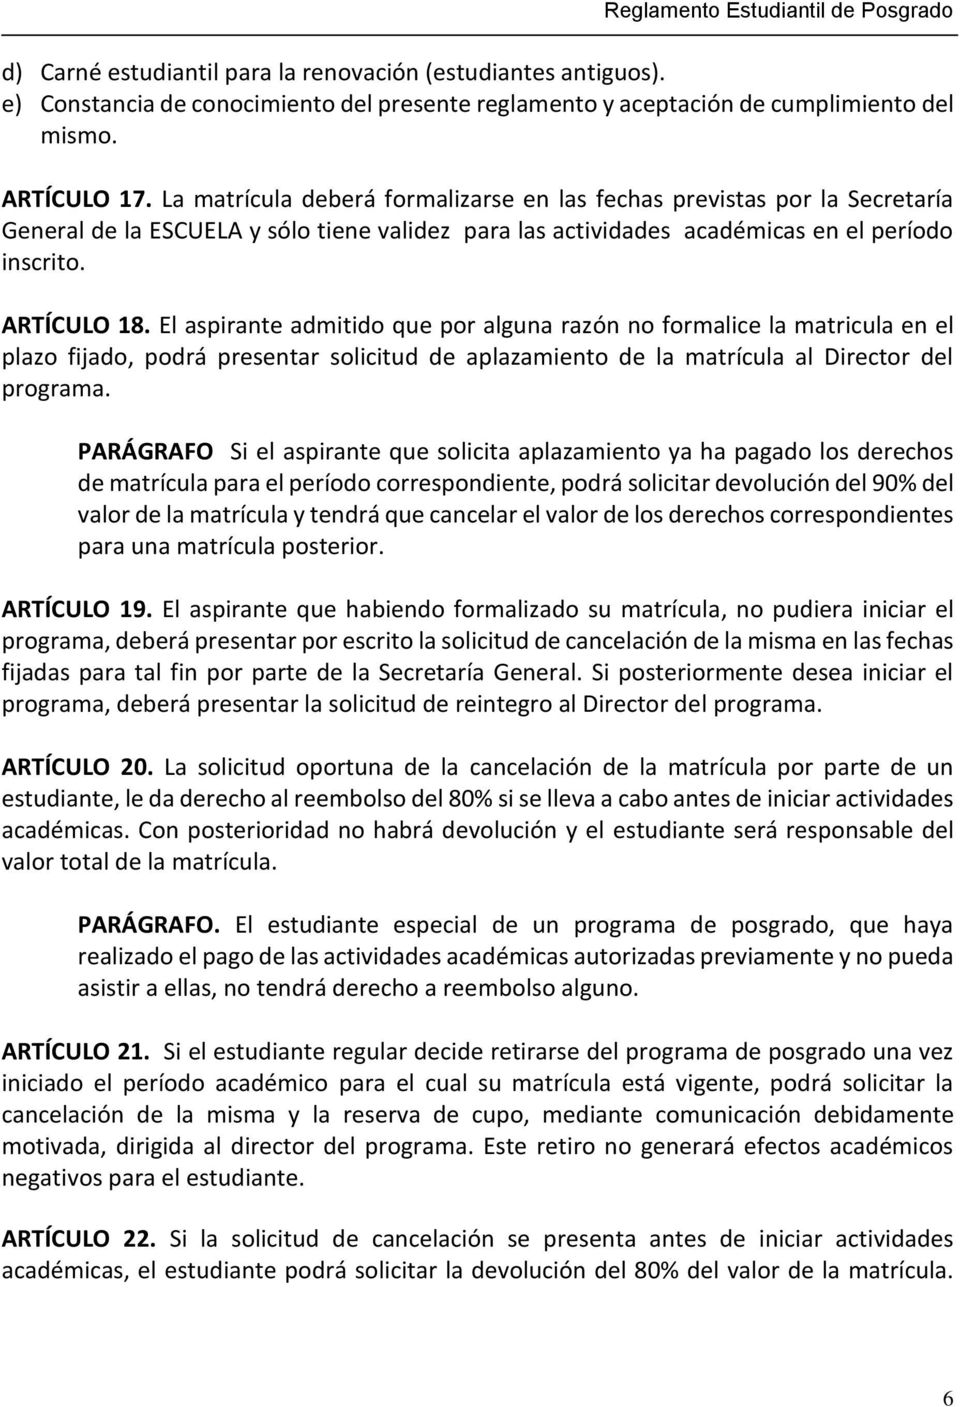 Escuela Colombiana De Ingenieria Julio Garavito Reglamento